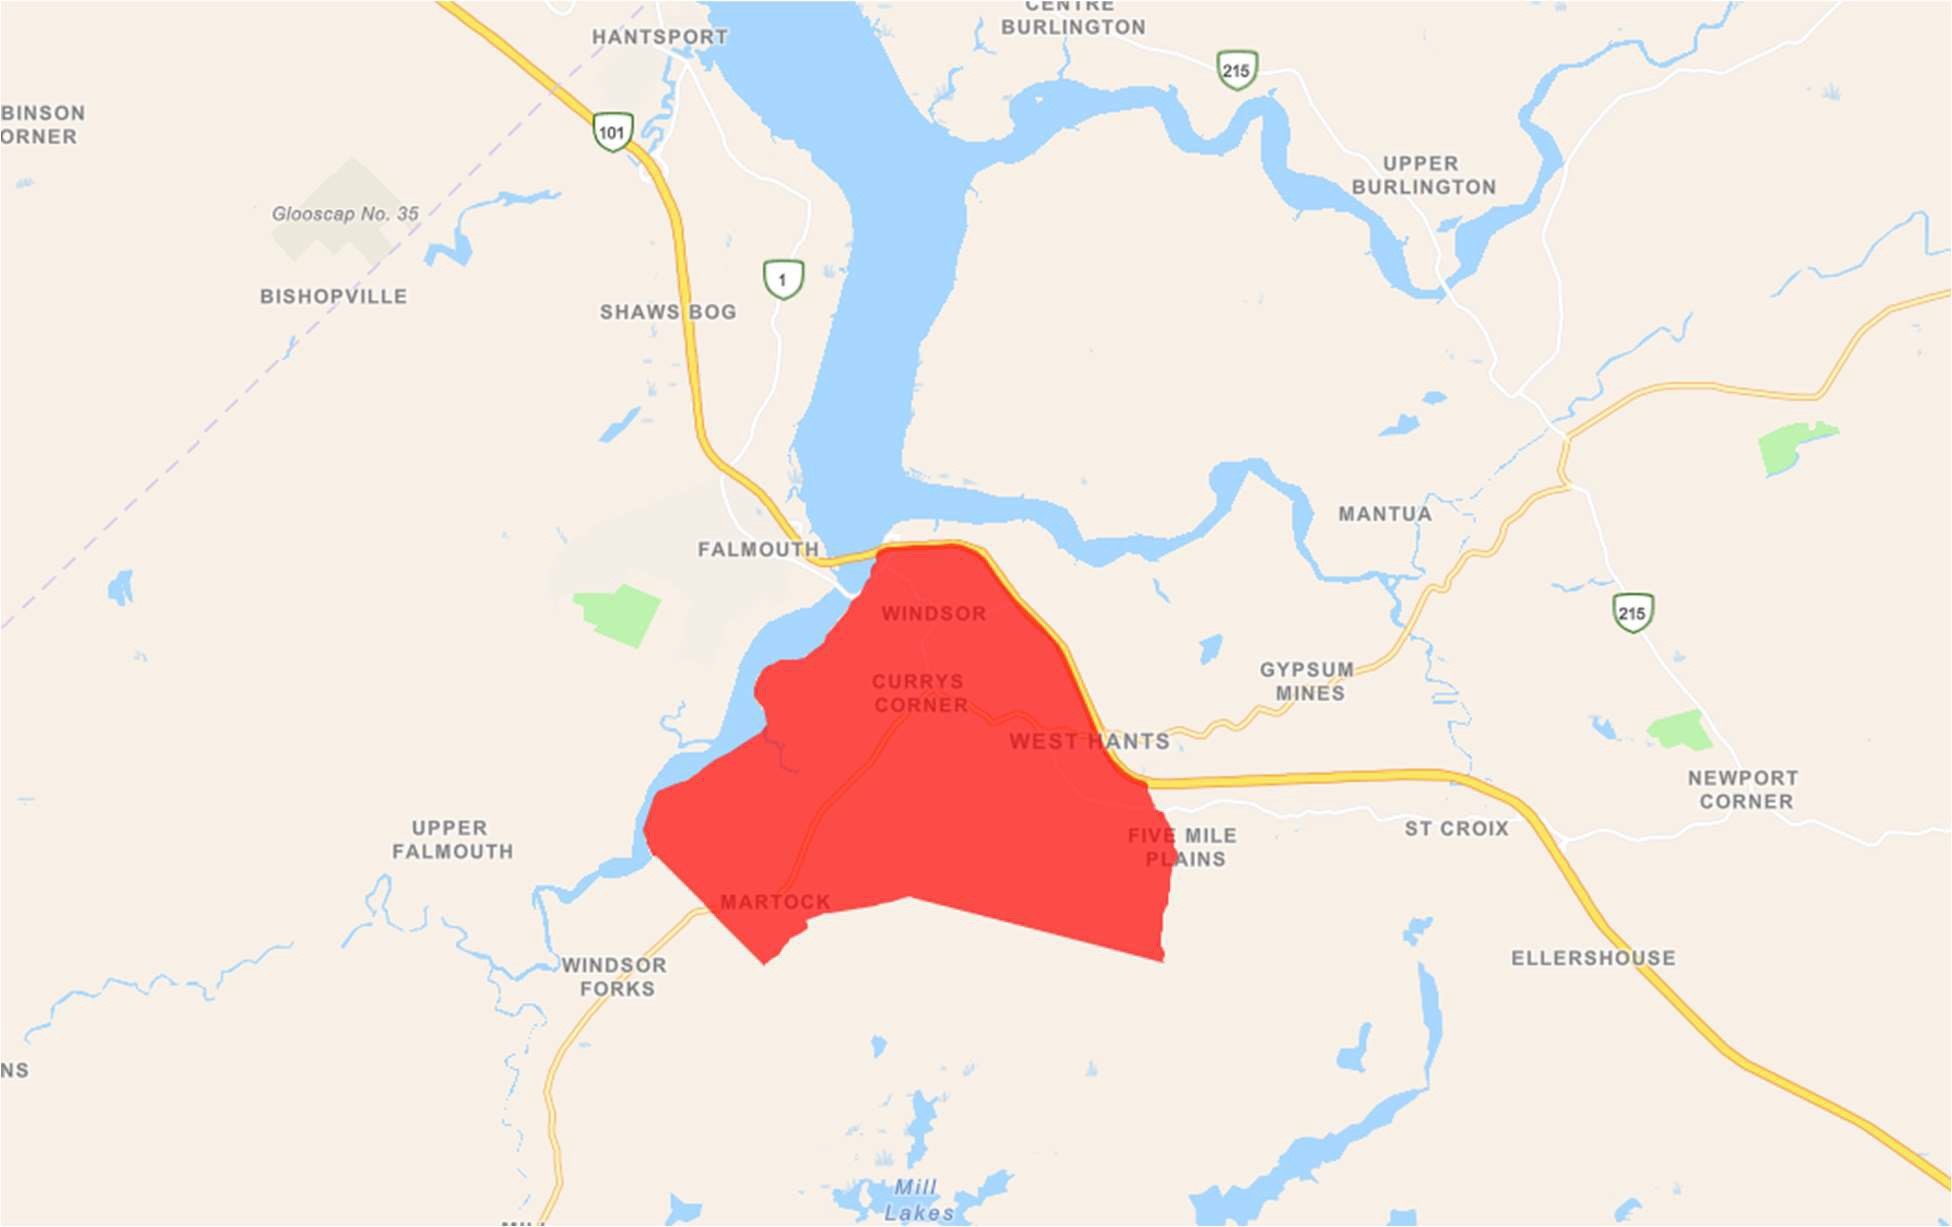 HPAI in Nova Scotia Zone 2 Update